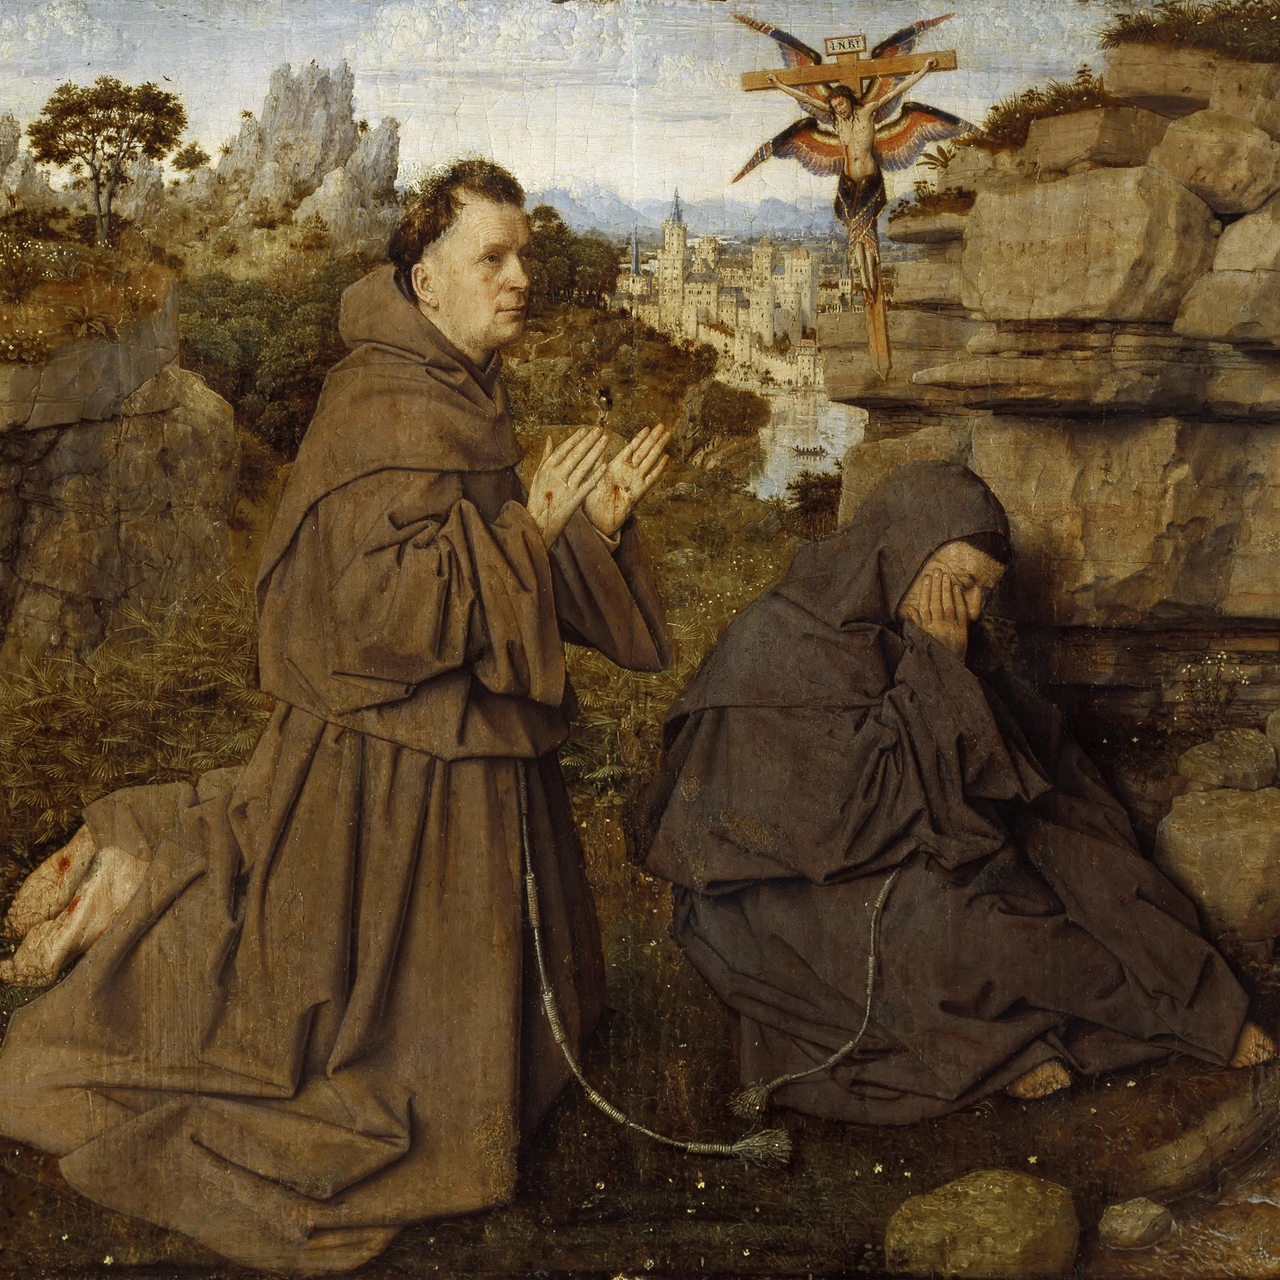 Gemälde von Jan van Eyck zeigt den Heiligen Franziskus von Assisi als er die Wundmale von Jesus erhält. Um 1430